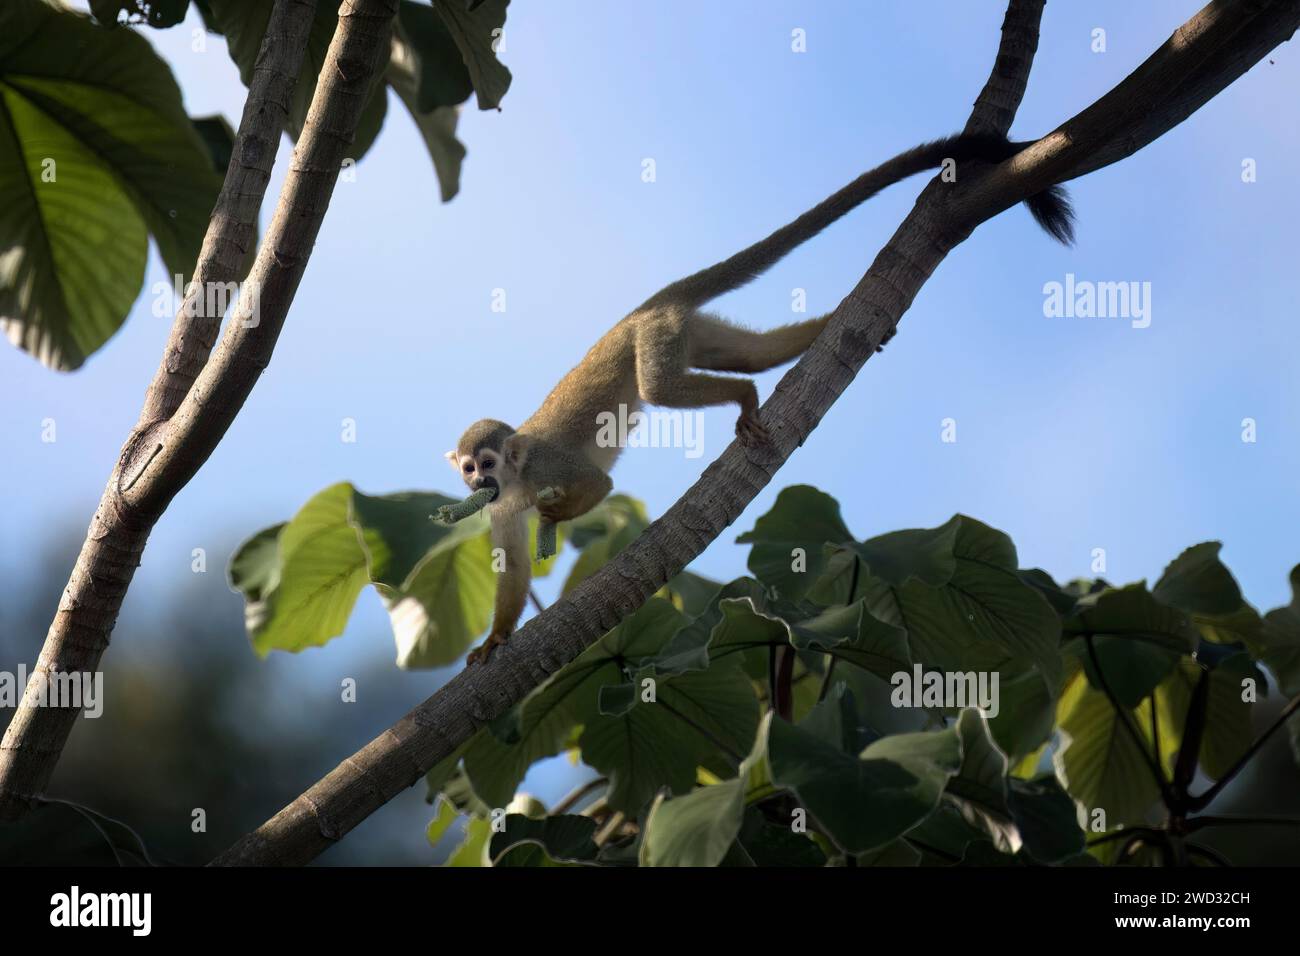 Singe écureuil de Collin, Saimiri collinsii, mangeant un fruit, bassin amazonien, Brésil Banque D'Images